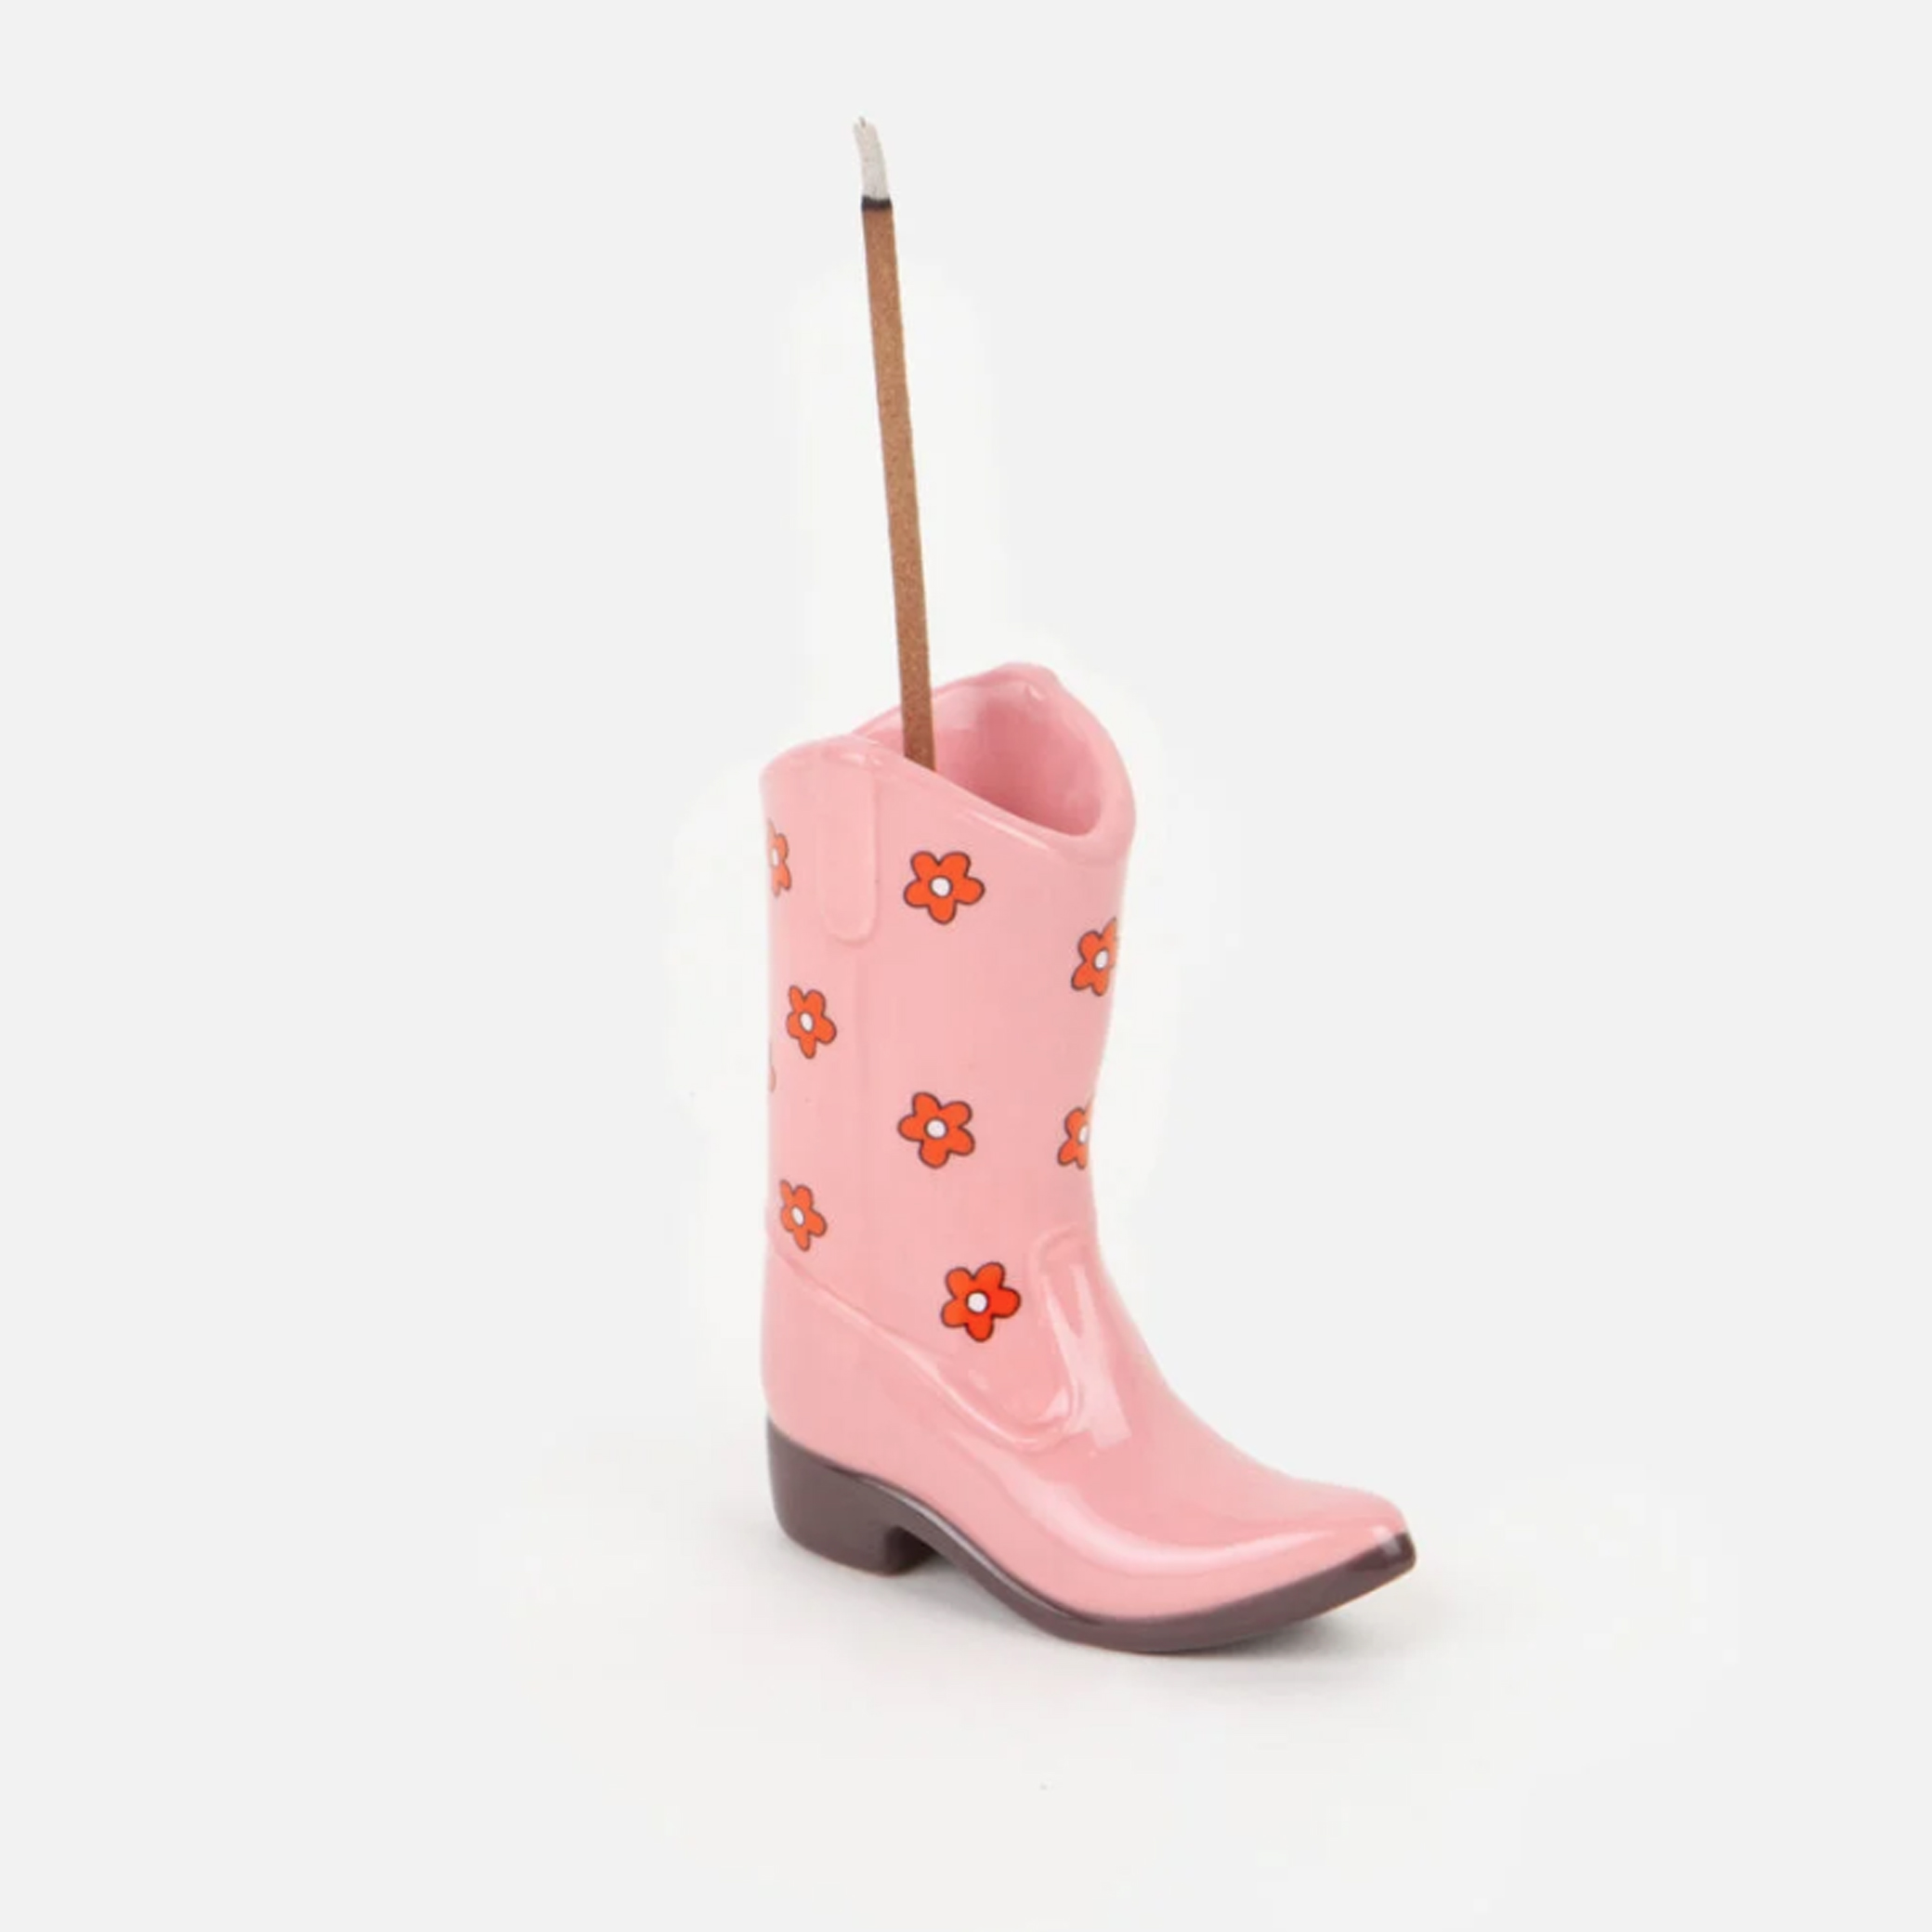 doiy-design-cowboy-boot-incense-holder